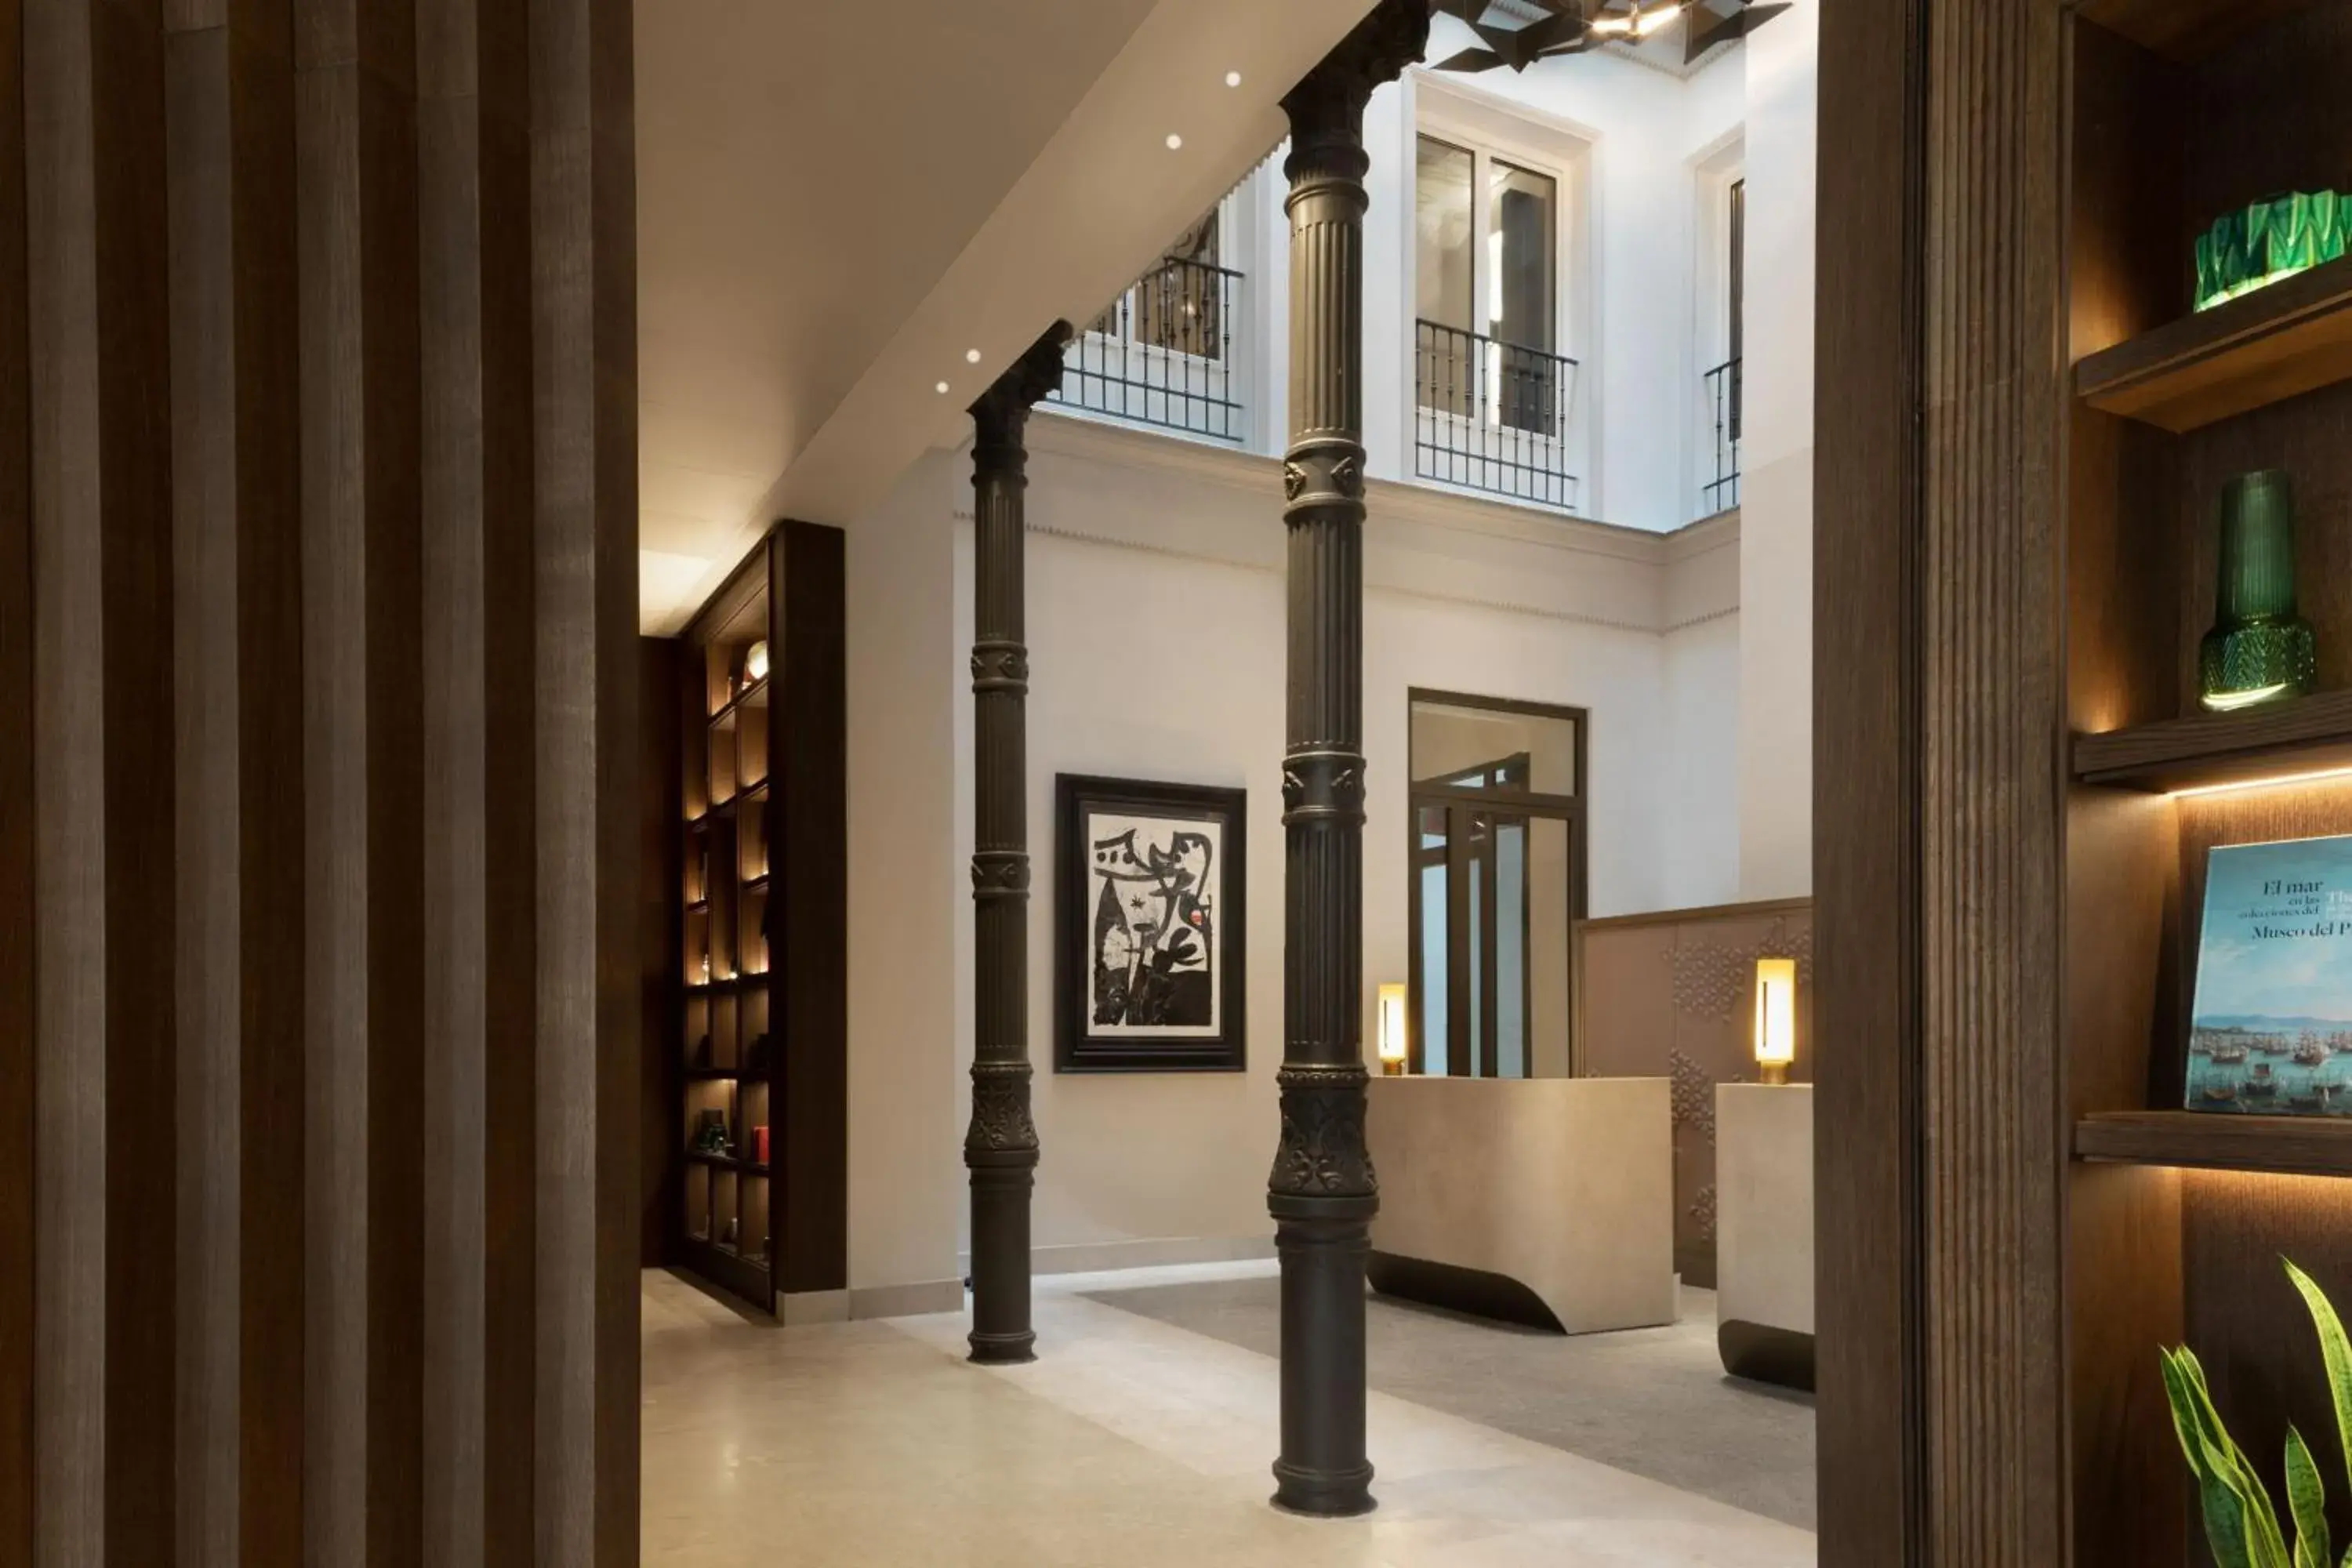 Lobby or reception in JW Marriott Hotel Madrid